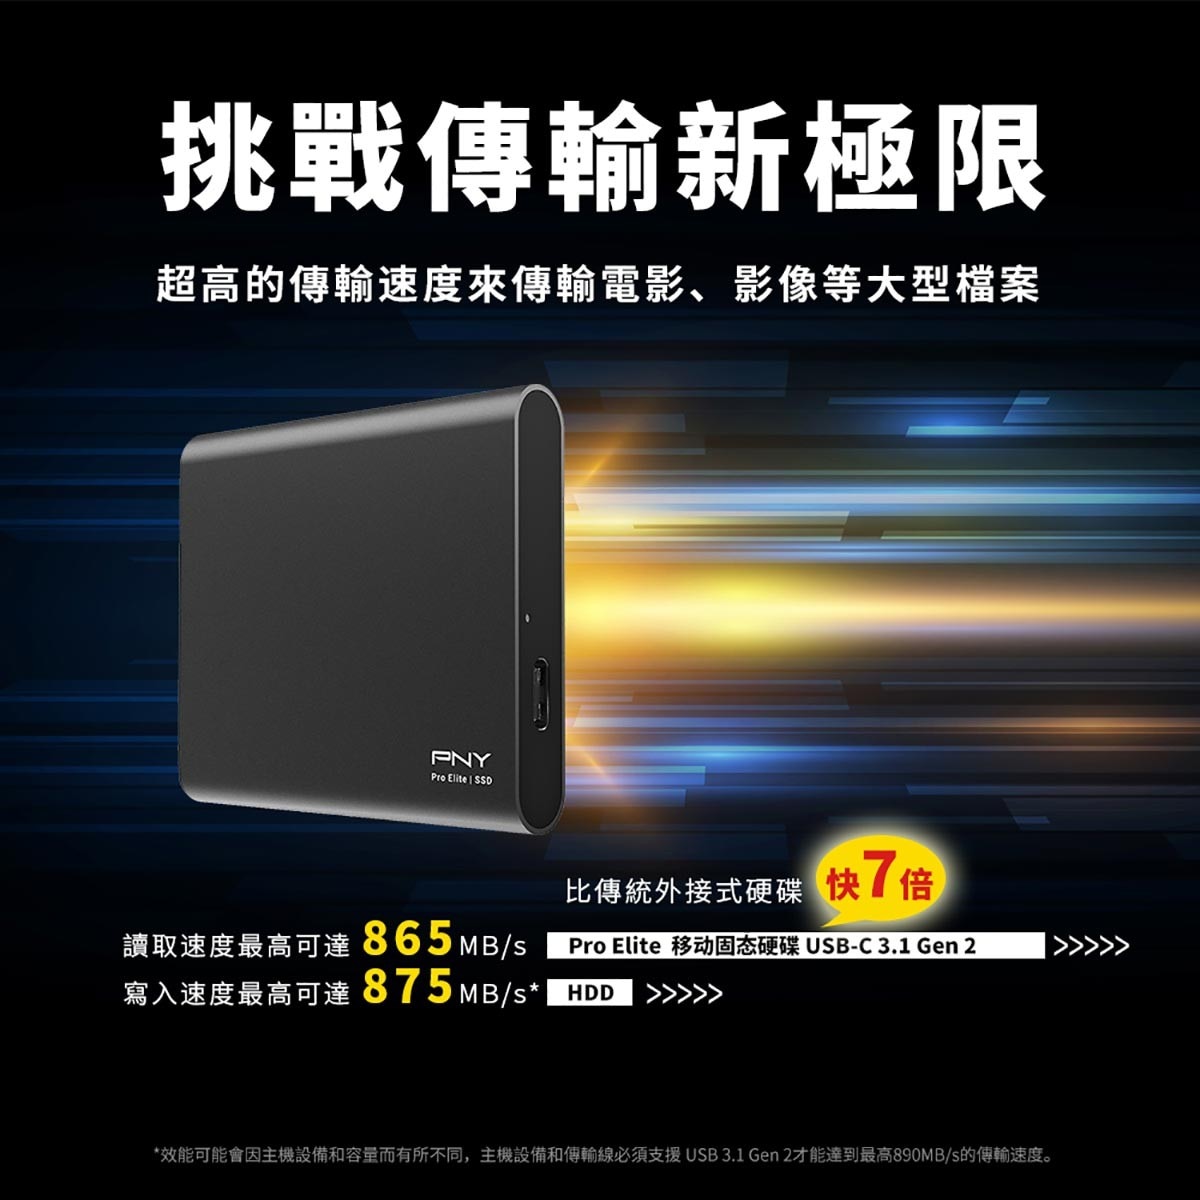 PNY Pro Elite 500GB 攜帶式固態硬碟，USB3.1 Gen 2的絕佳傳輸表現，比傳統外接式硬碟快七倍，挑戰傳輸新極限。